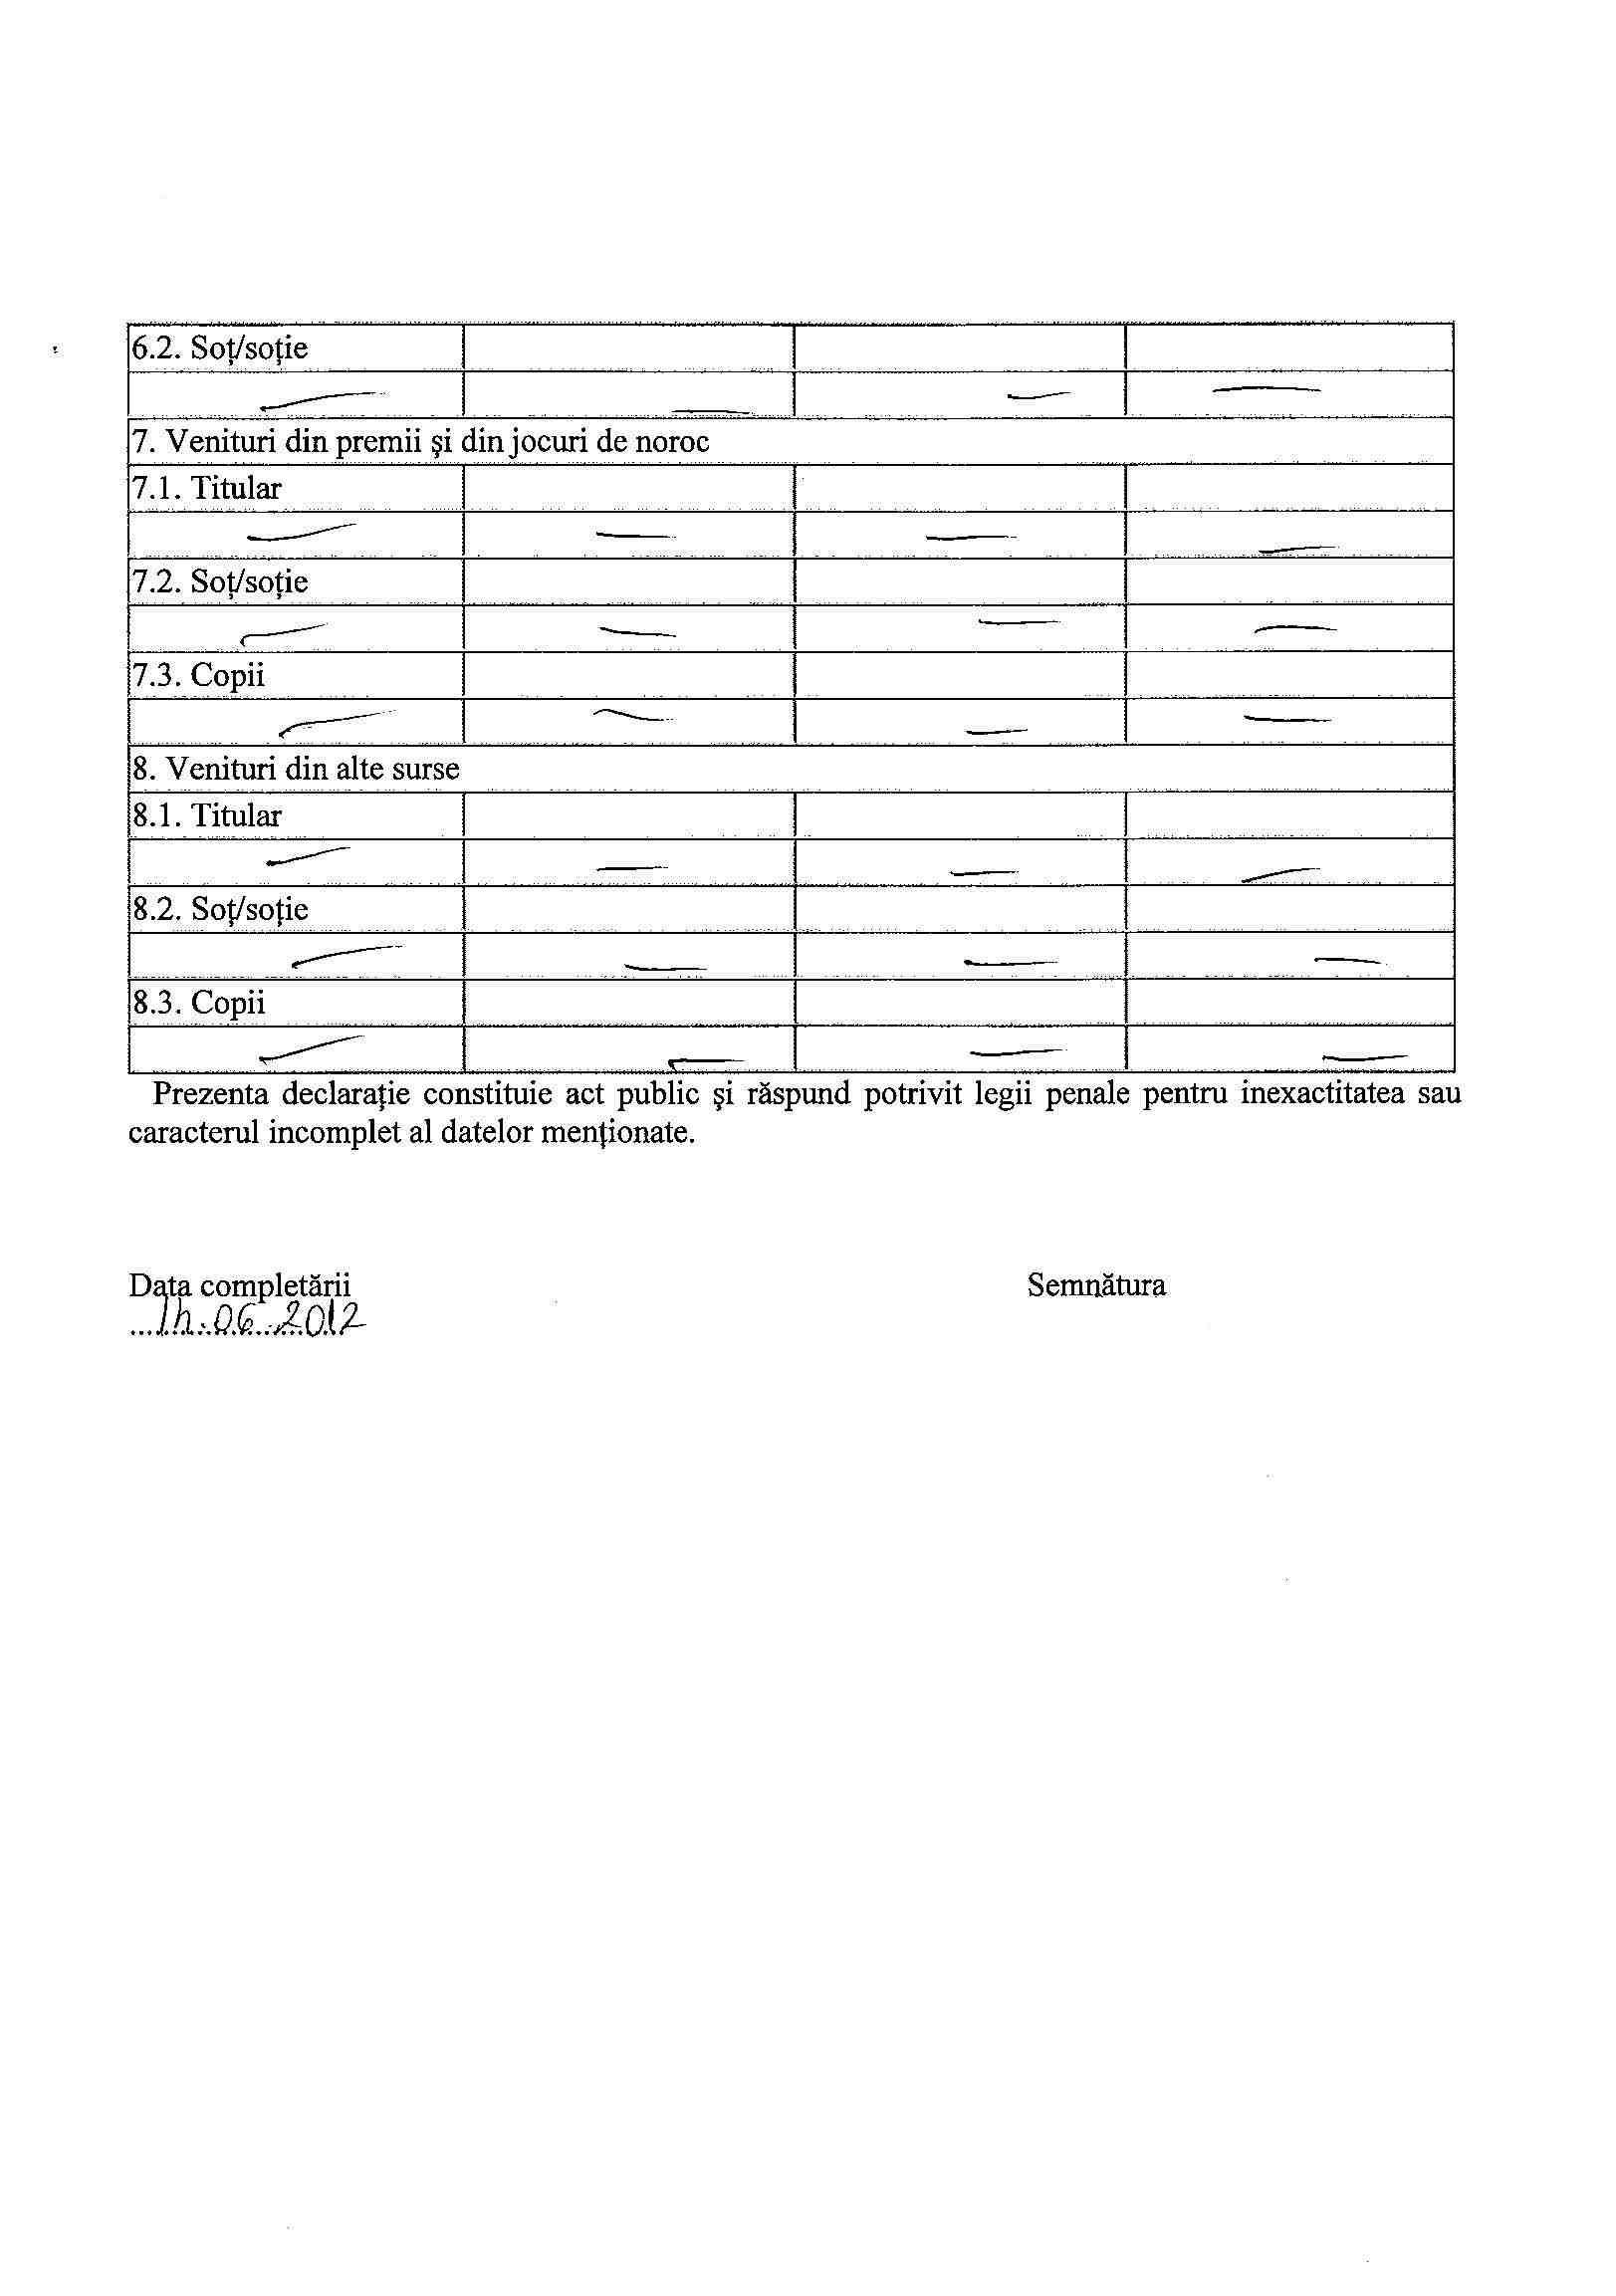 Declaratia de avere si de interese din data 25.06.2012 - pagina 5 din 6